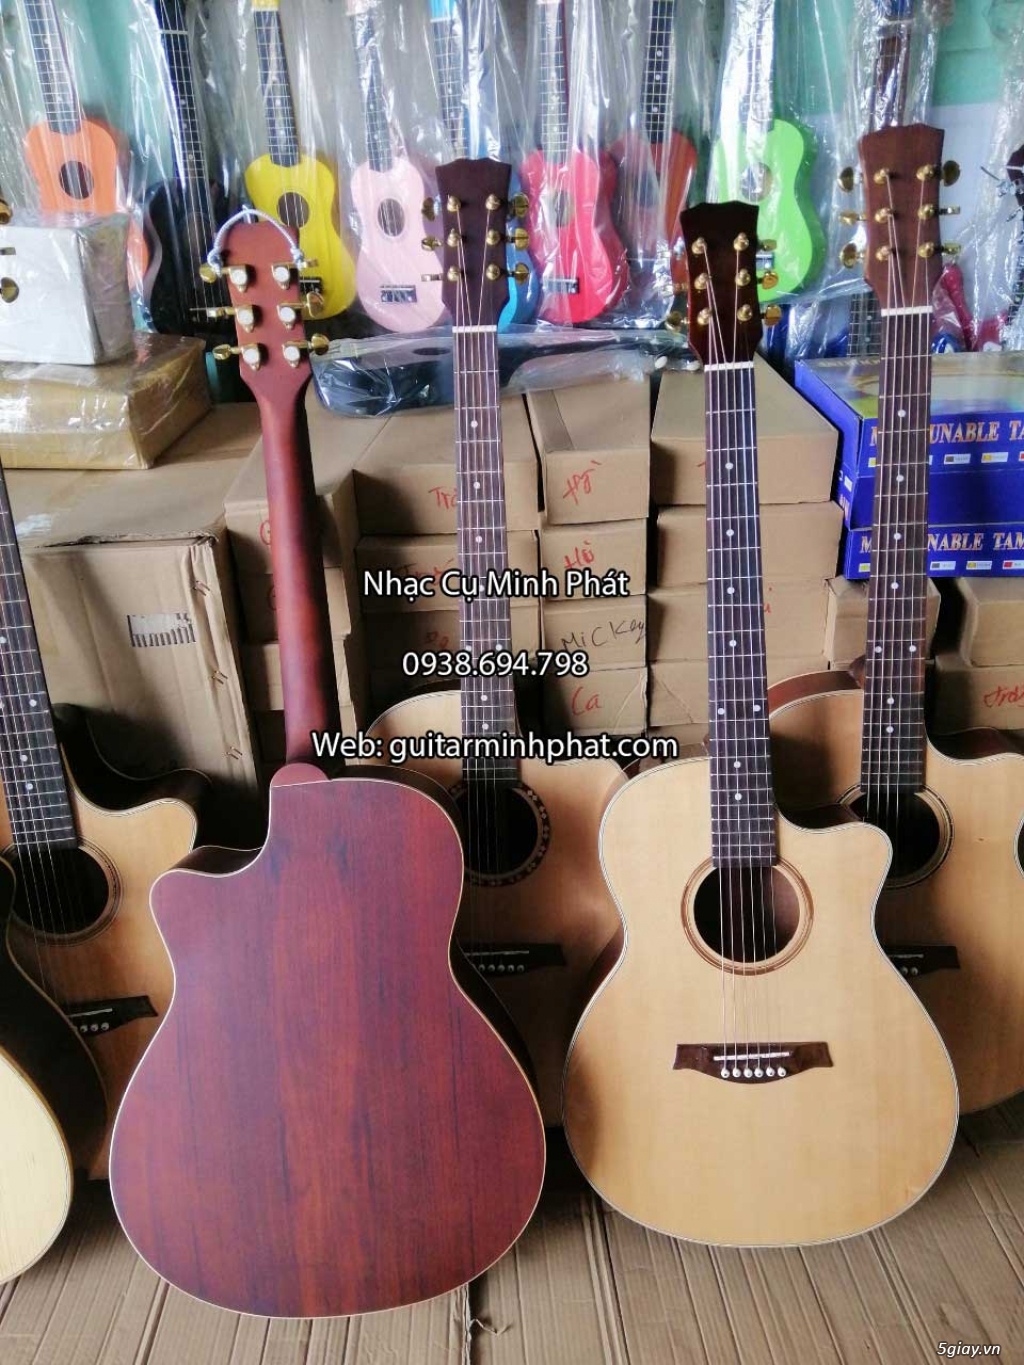 Bán đàn guitar, ukulele, kalimba giá rẻ ở quận Gò Vấp TPHCM - 8